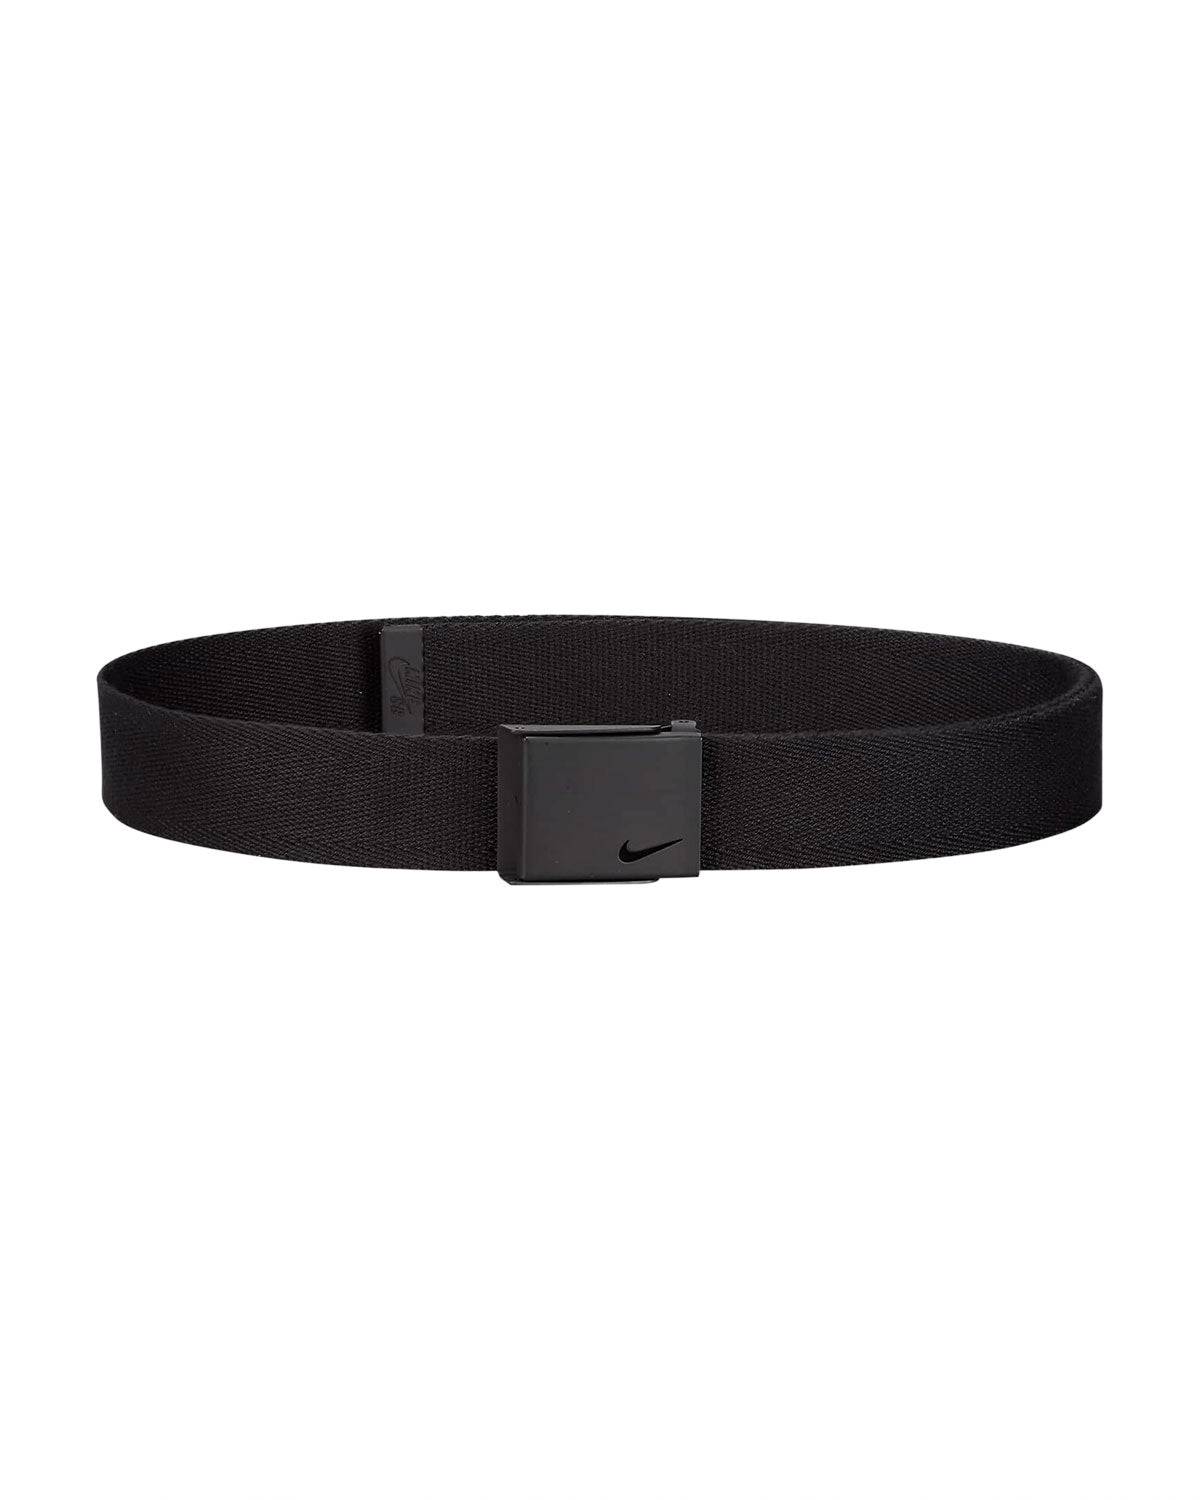 Nike SB Futura Reversible Web Belt - Black image 1